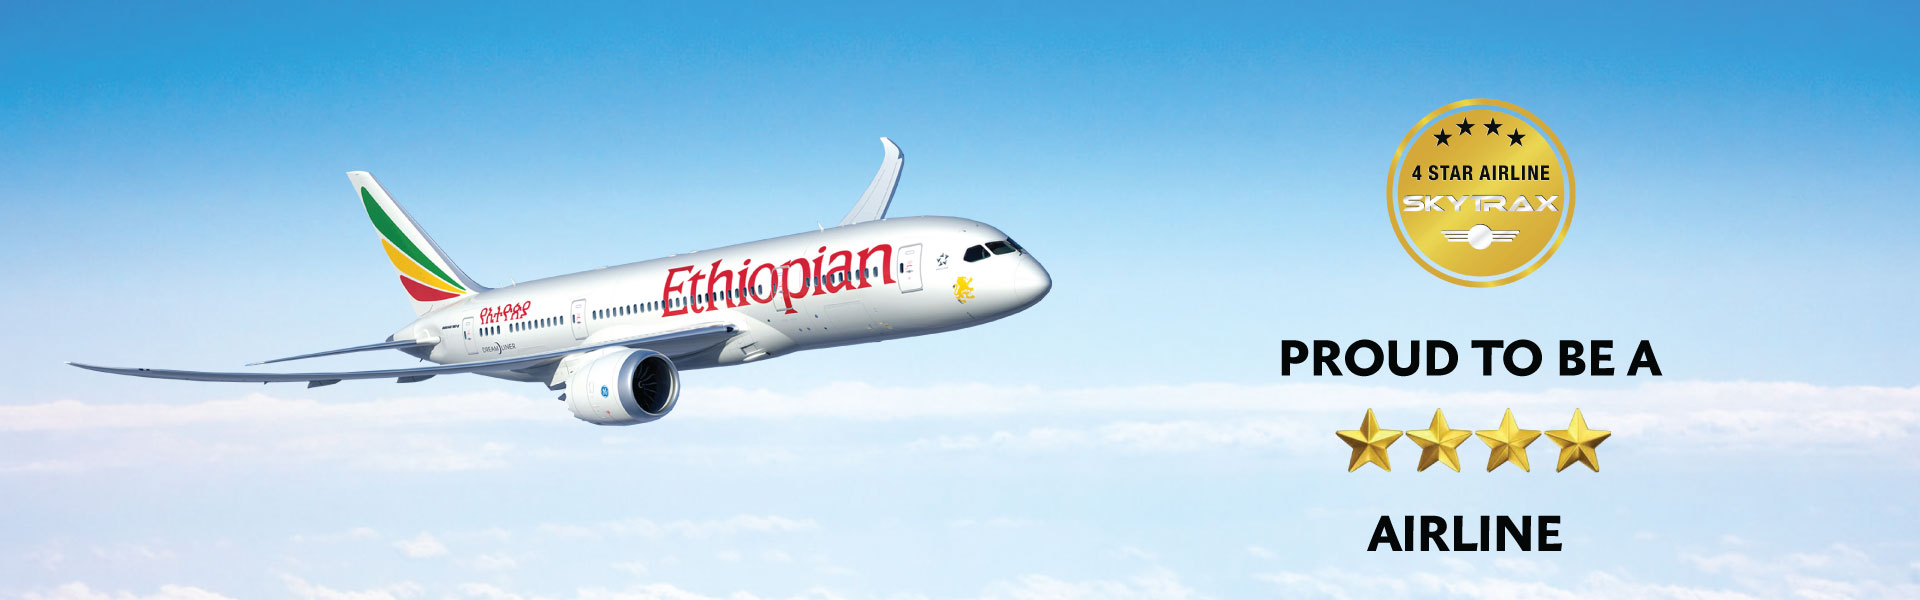 Ethiopian-Airlines Executive profile